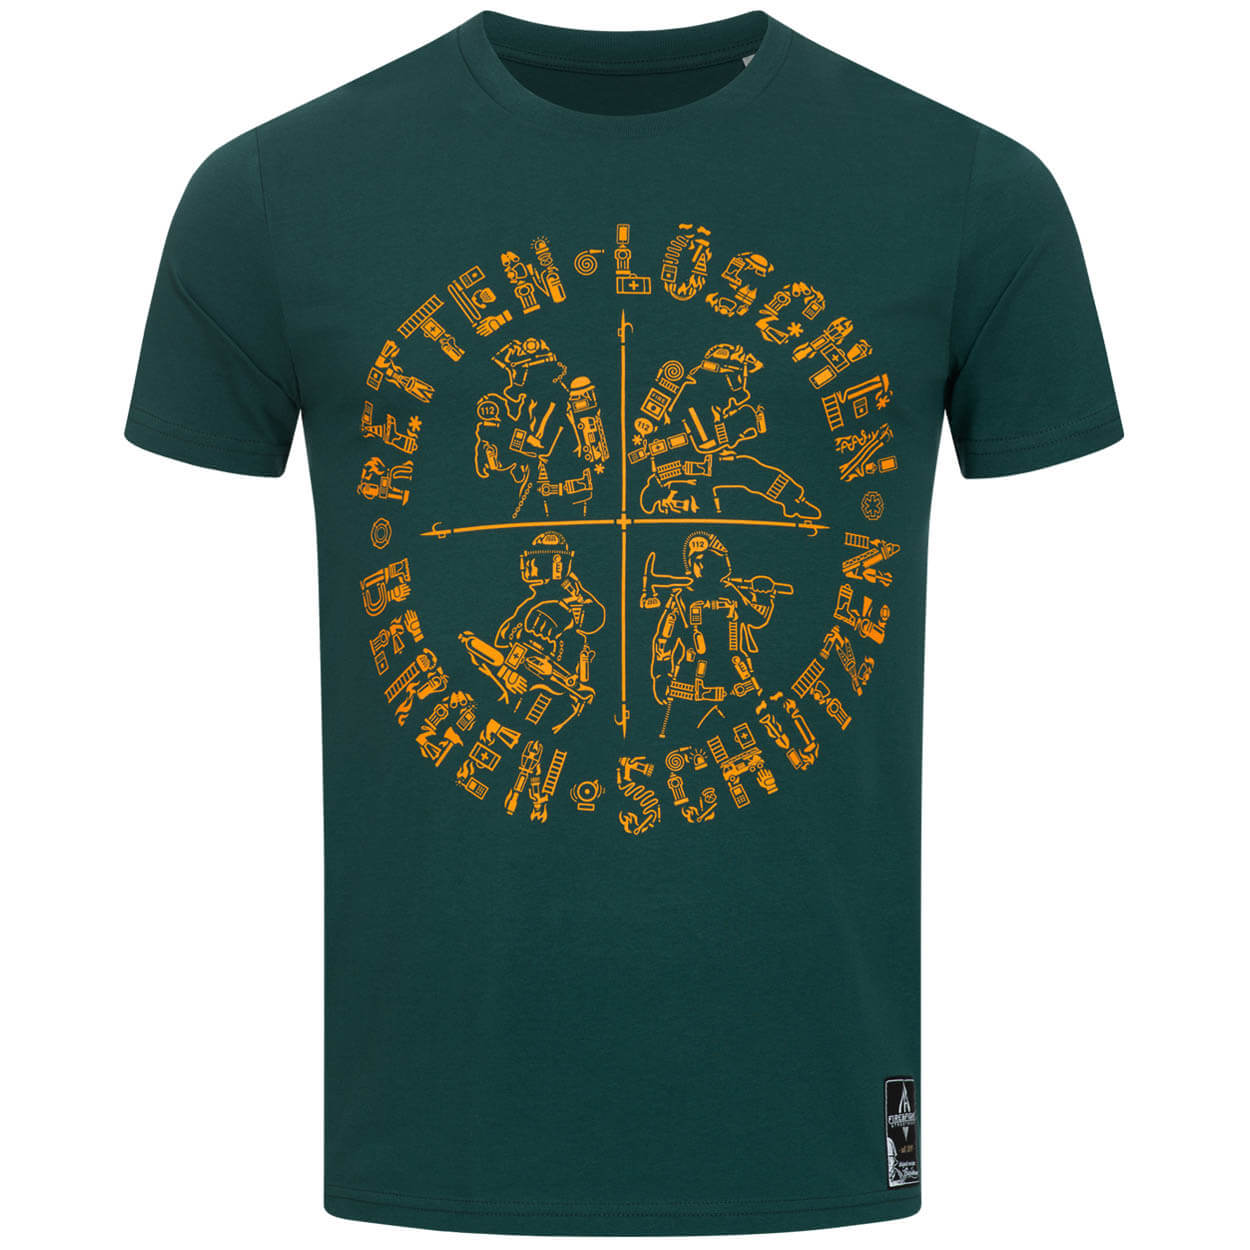 Retten Löschen Bergen Schützen - Männer T-Shirt green